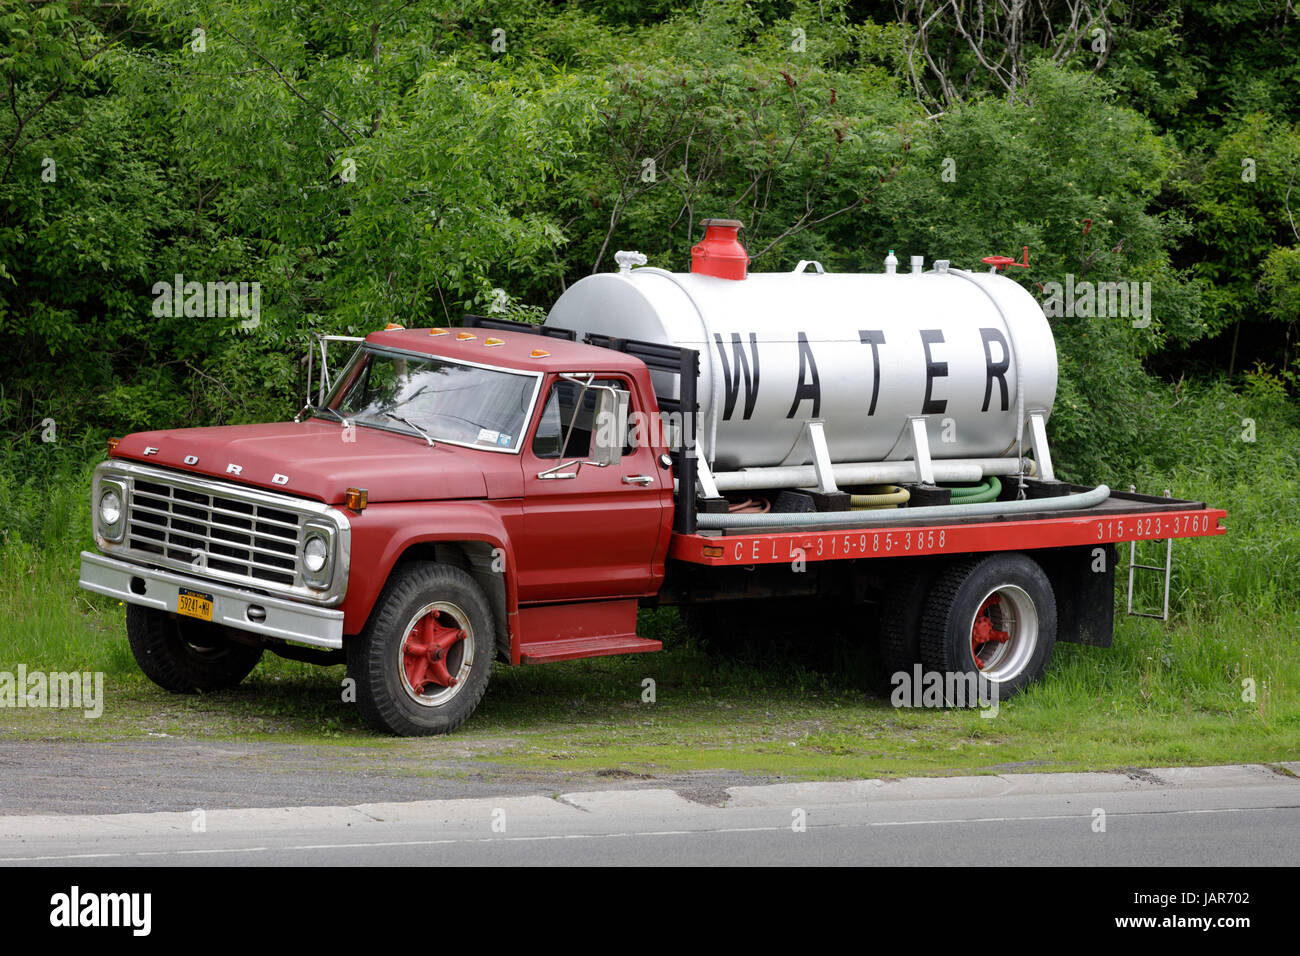 LITTLE FALLS, NEW YORK, Stati Uniti d'America - 2 giugno 2017: un camion sul ciglio della strada la vendita di acqua, nella contea di Herkimer. Foto Stock